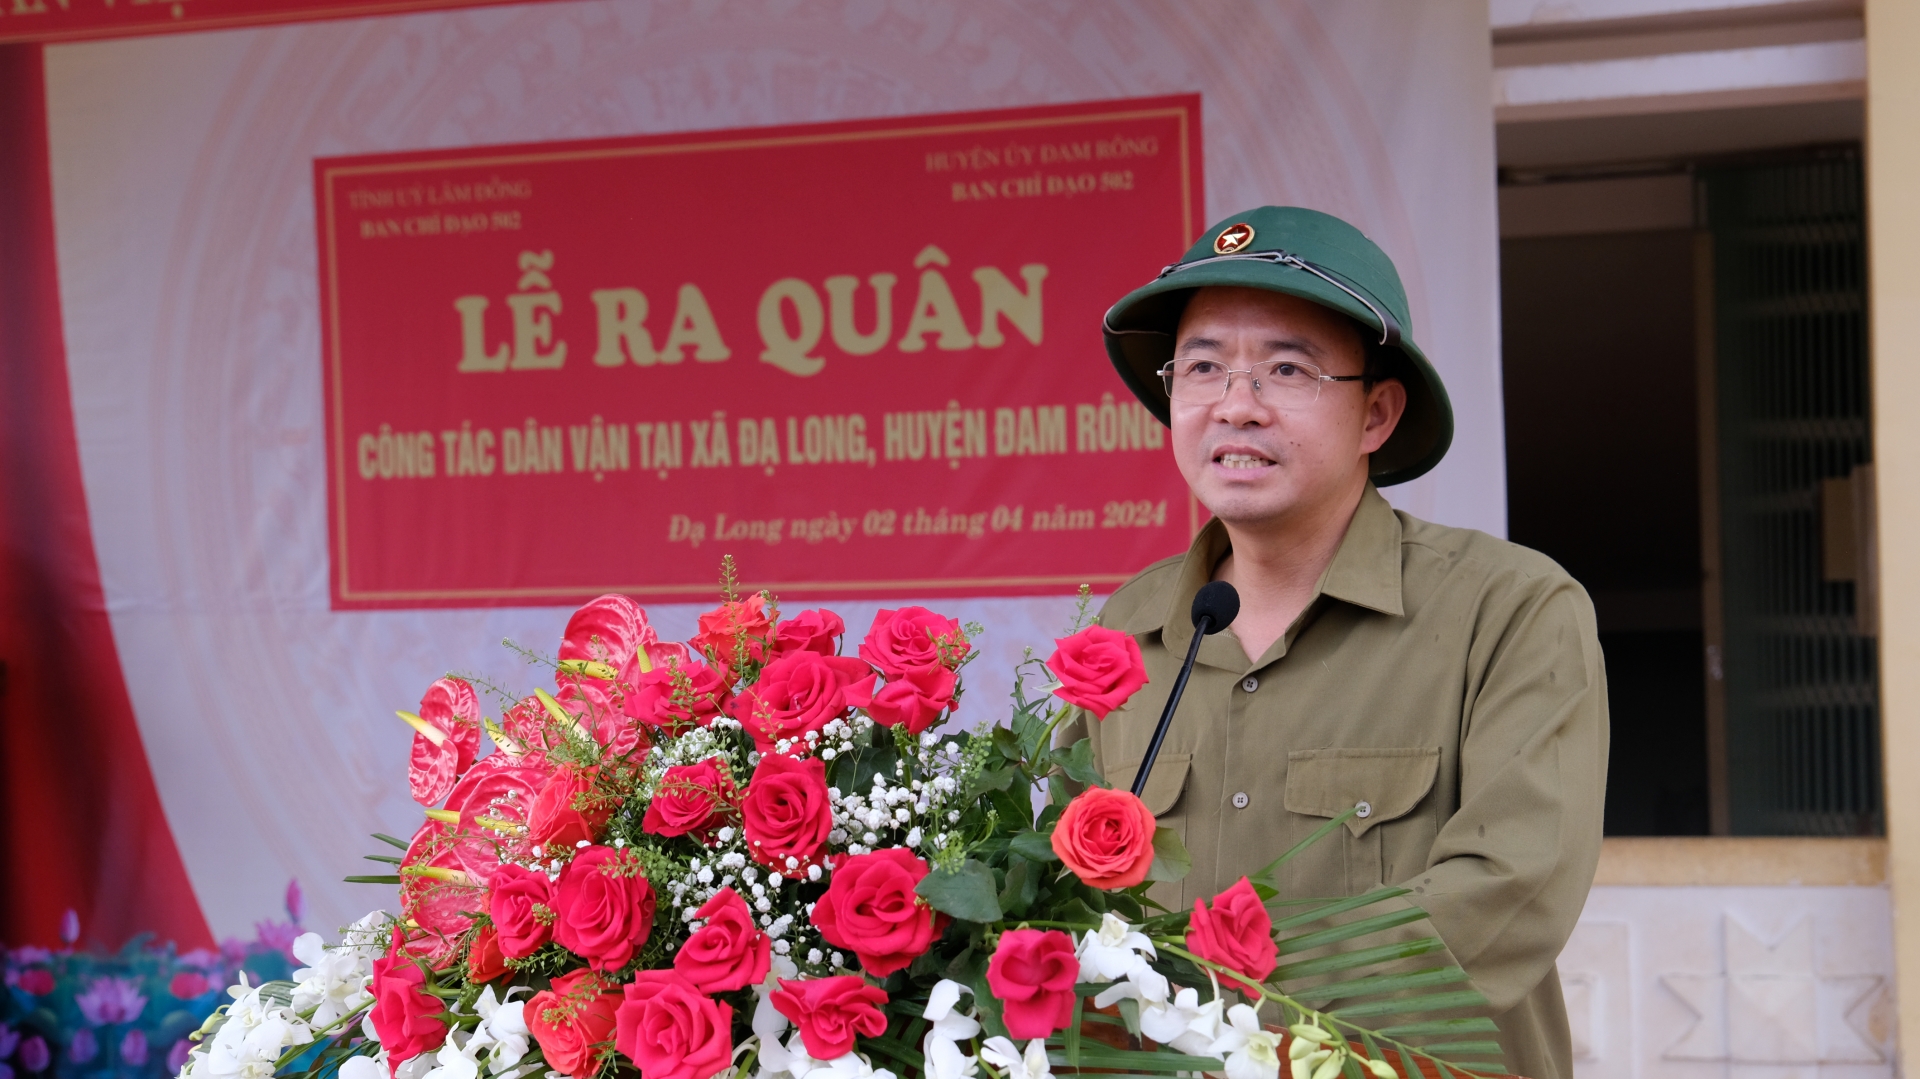 Đồng chí Nguyễn Văn Lộc - Bí thư Huyện ủy Đam Rông phát biểu tại lễ ra quân